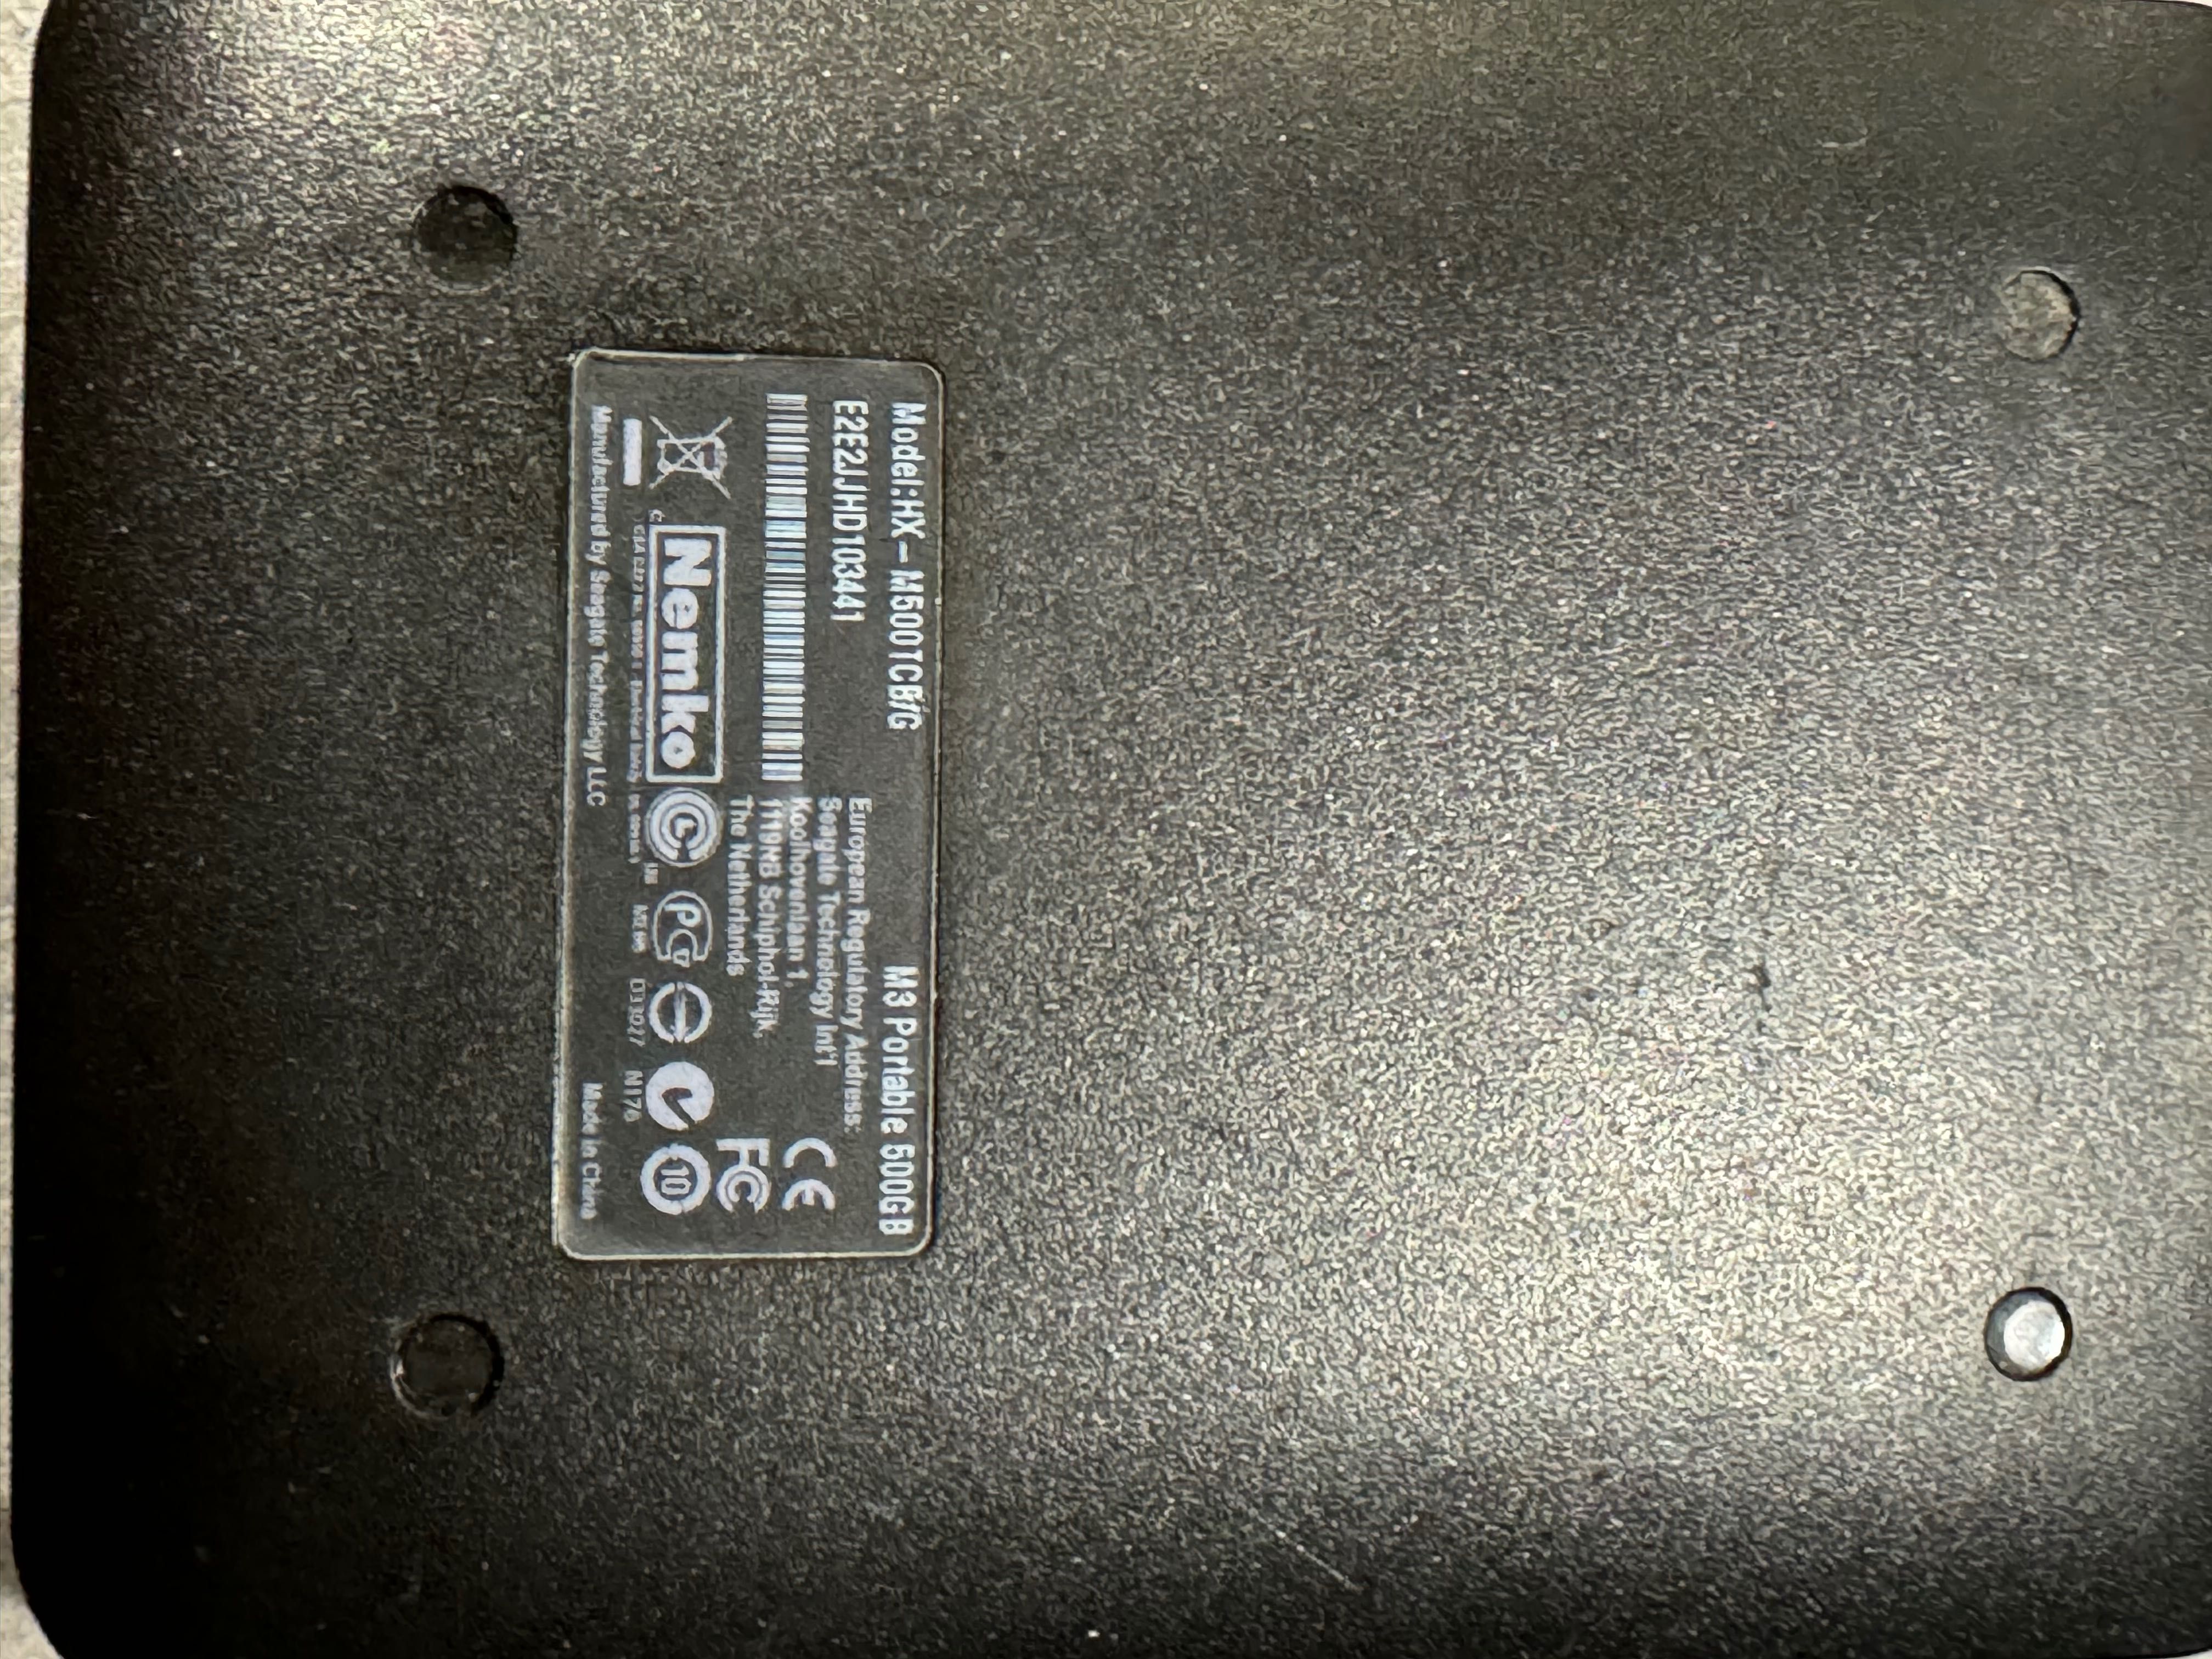 Dysk zewnętrzny Samsung M3 Portable 500GB czarny